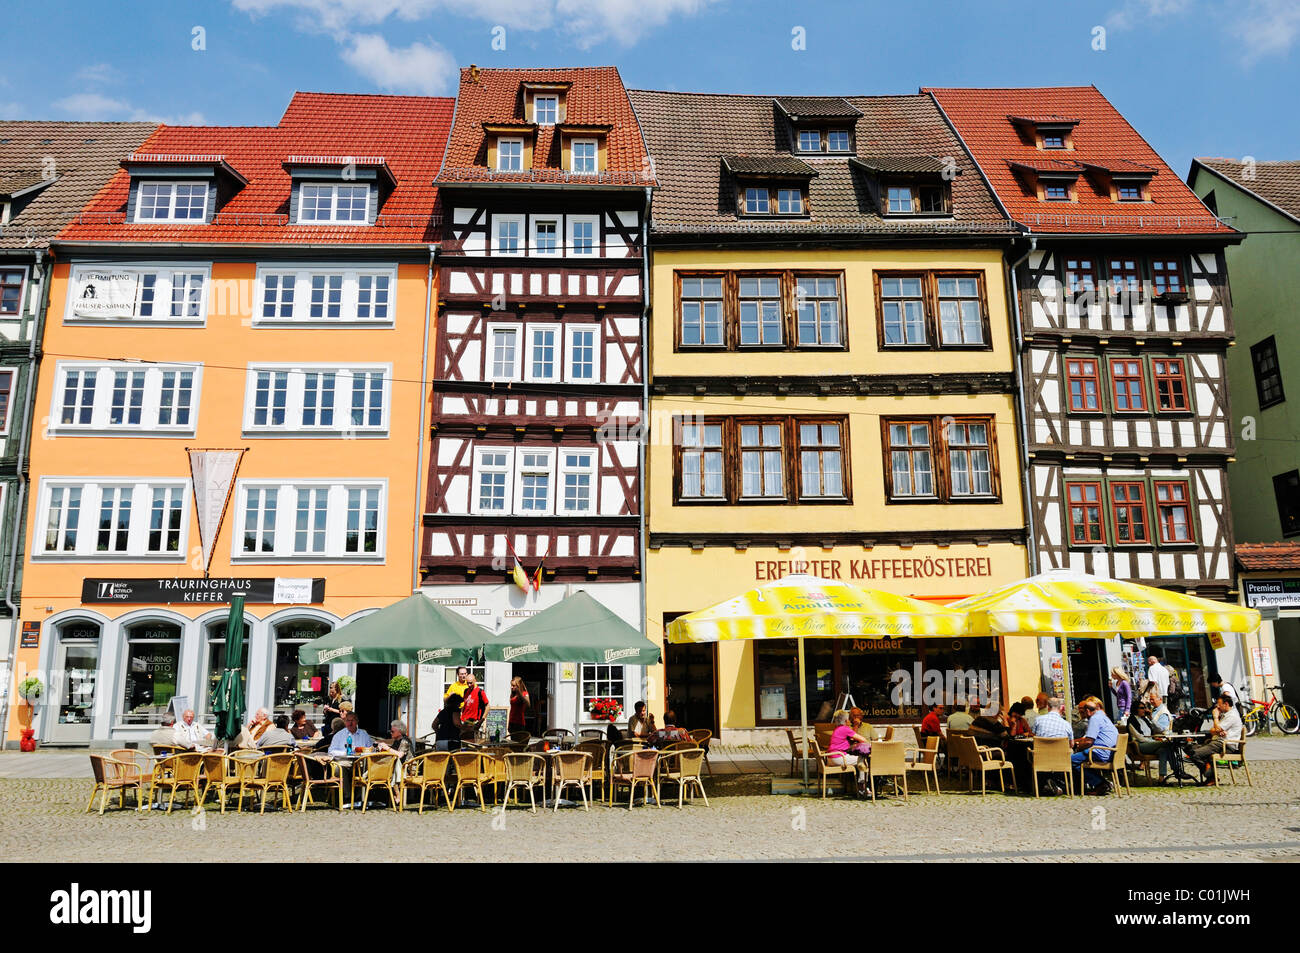 La arquitectura histórica con casas con entramados de madera, cafés y restaurantes, la plaza de la catedral Domplatz, Erfurt, Turingia Foto de stock